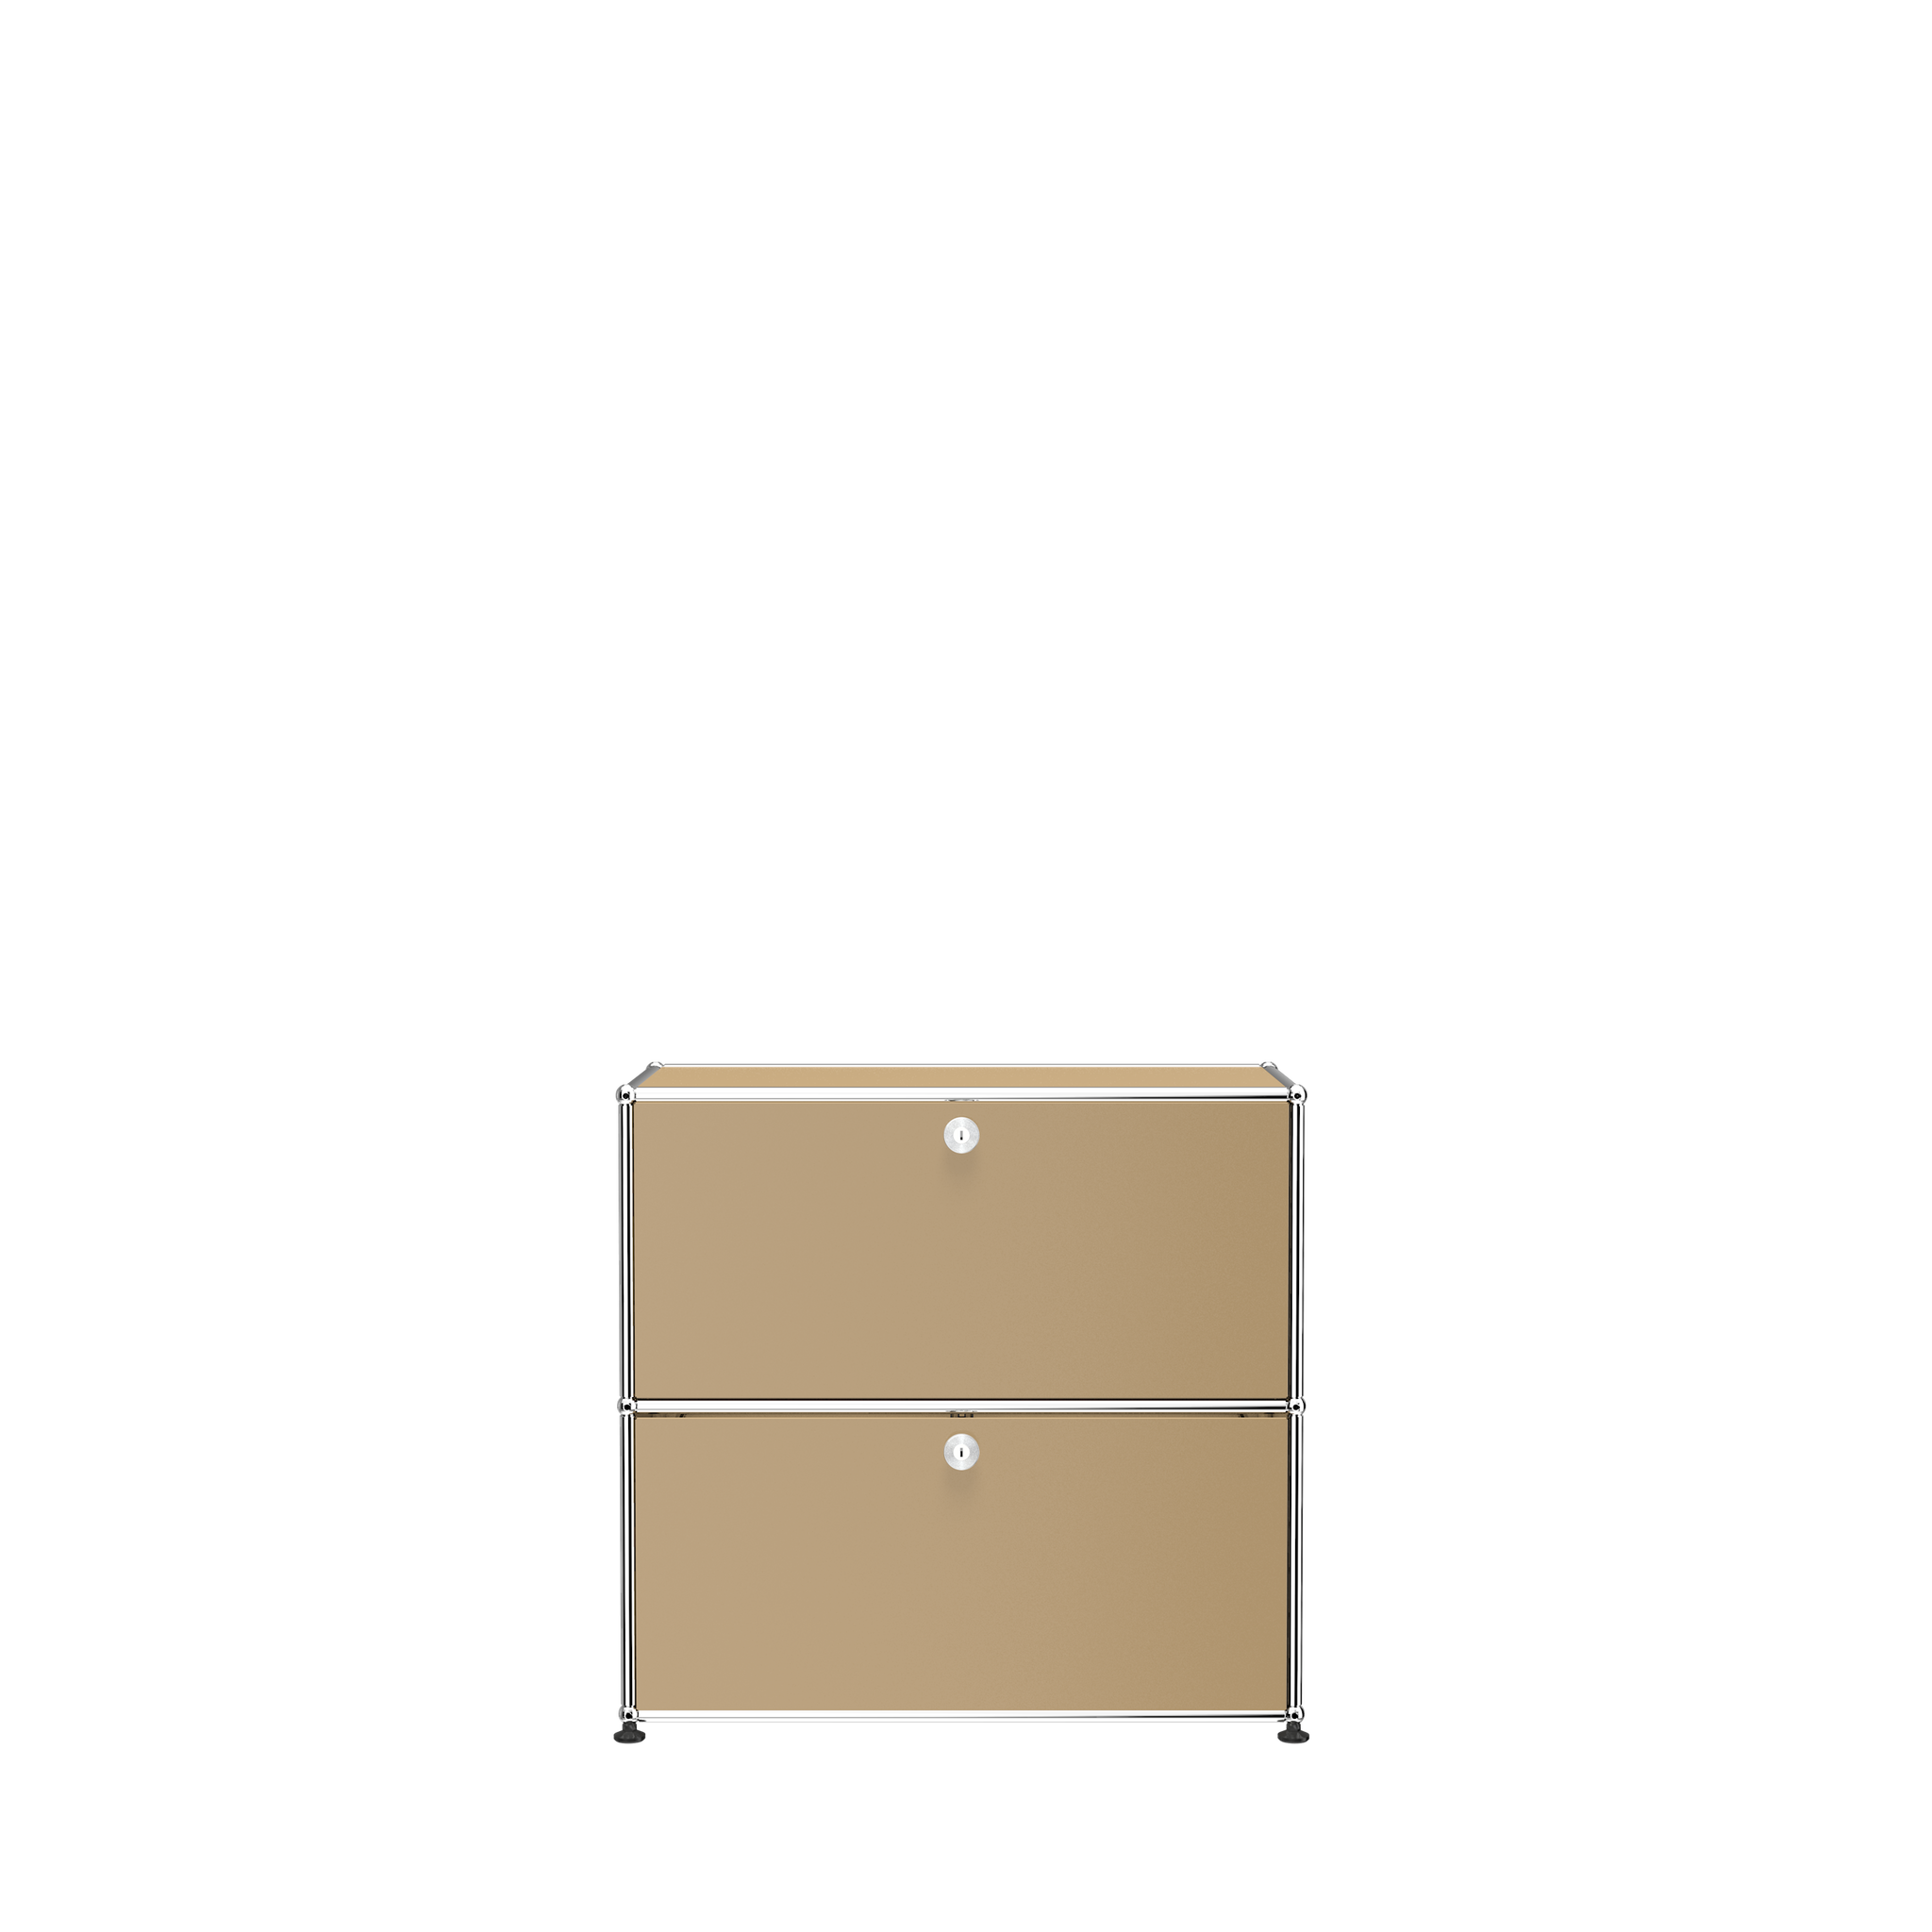 USM Haller Small Modern File Cabinet (C1AF) in Beige